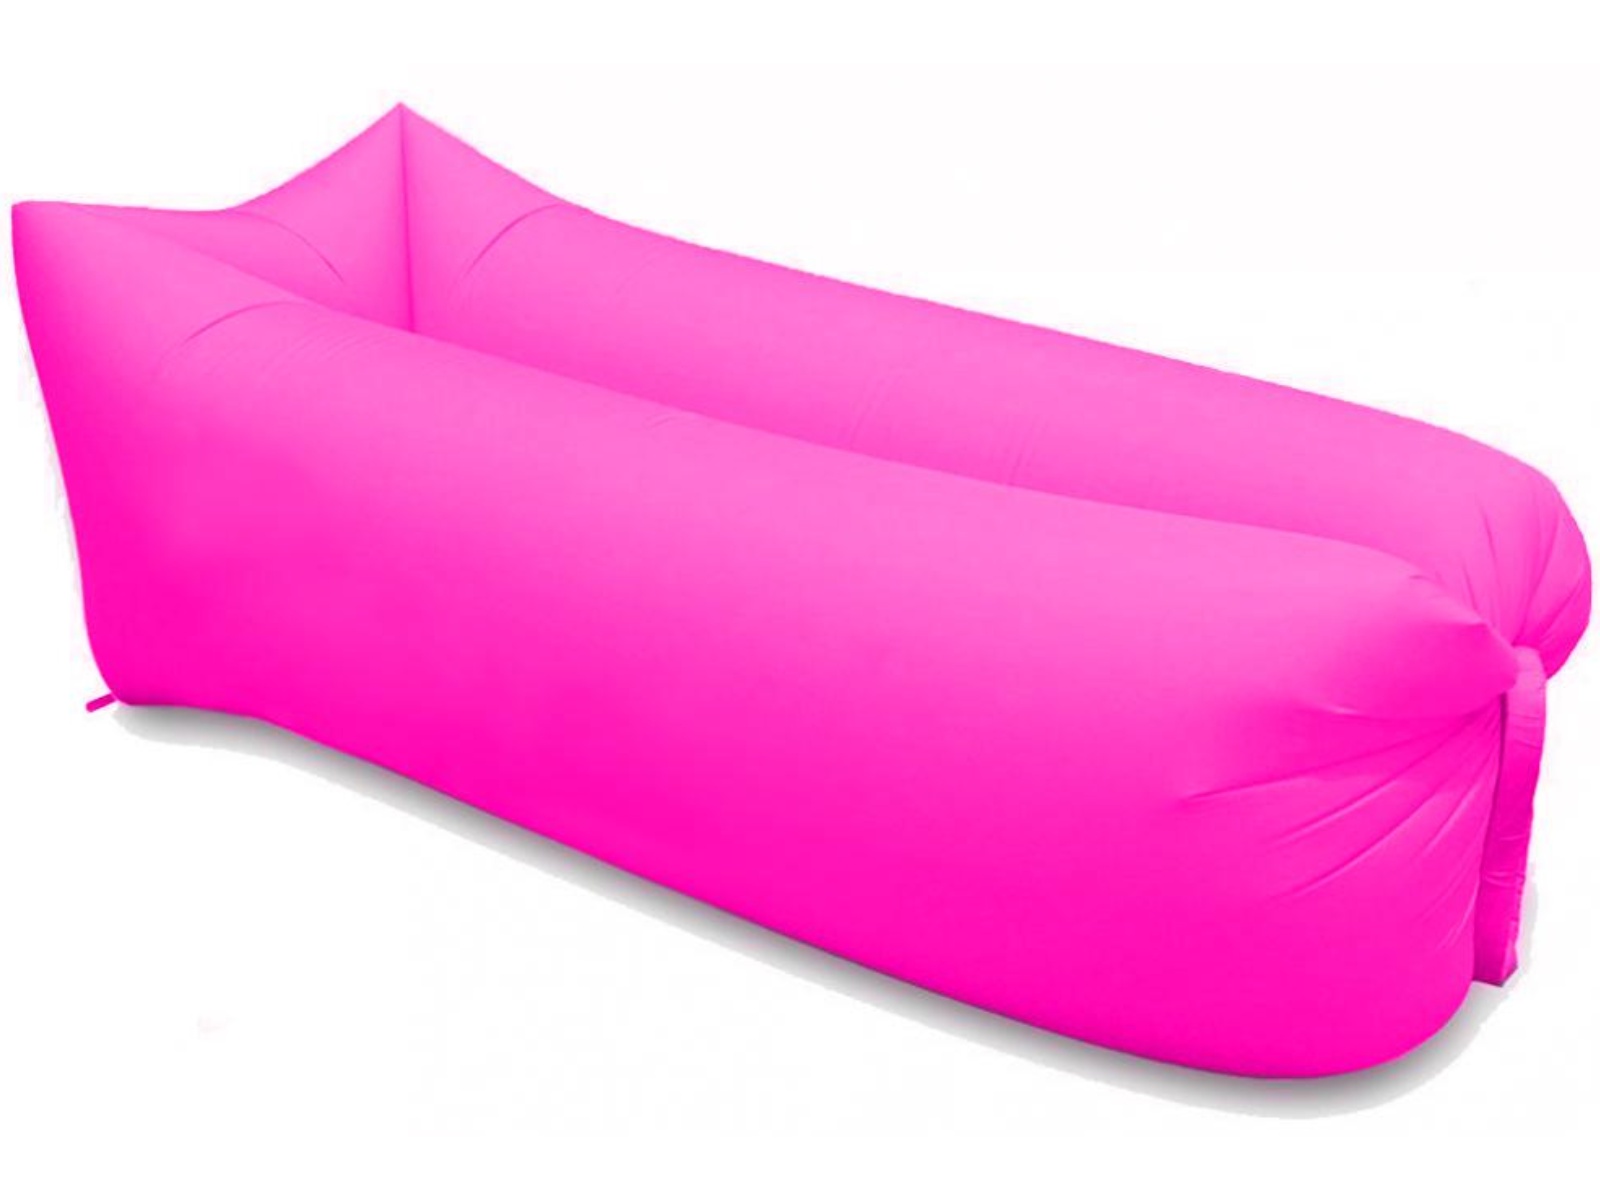 Nafukovací vak SEDCO Sofair Pillow Shape - růžový